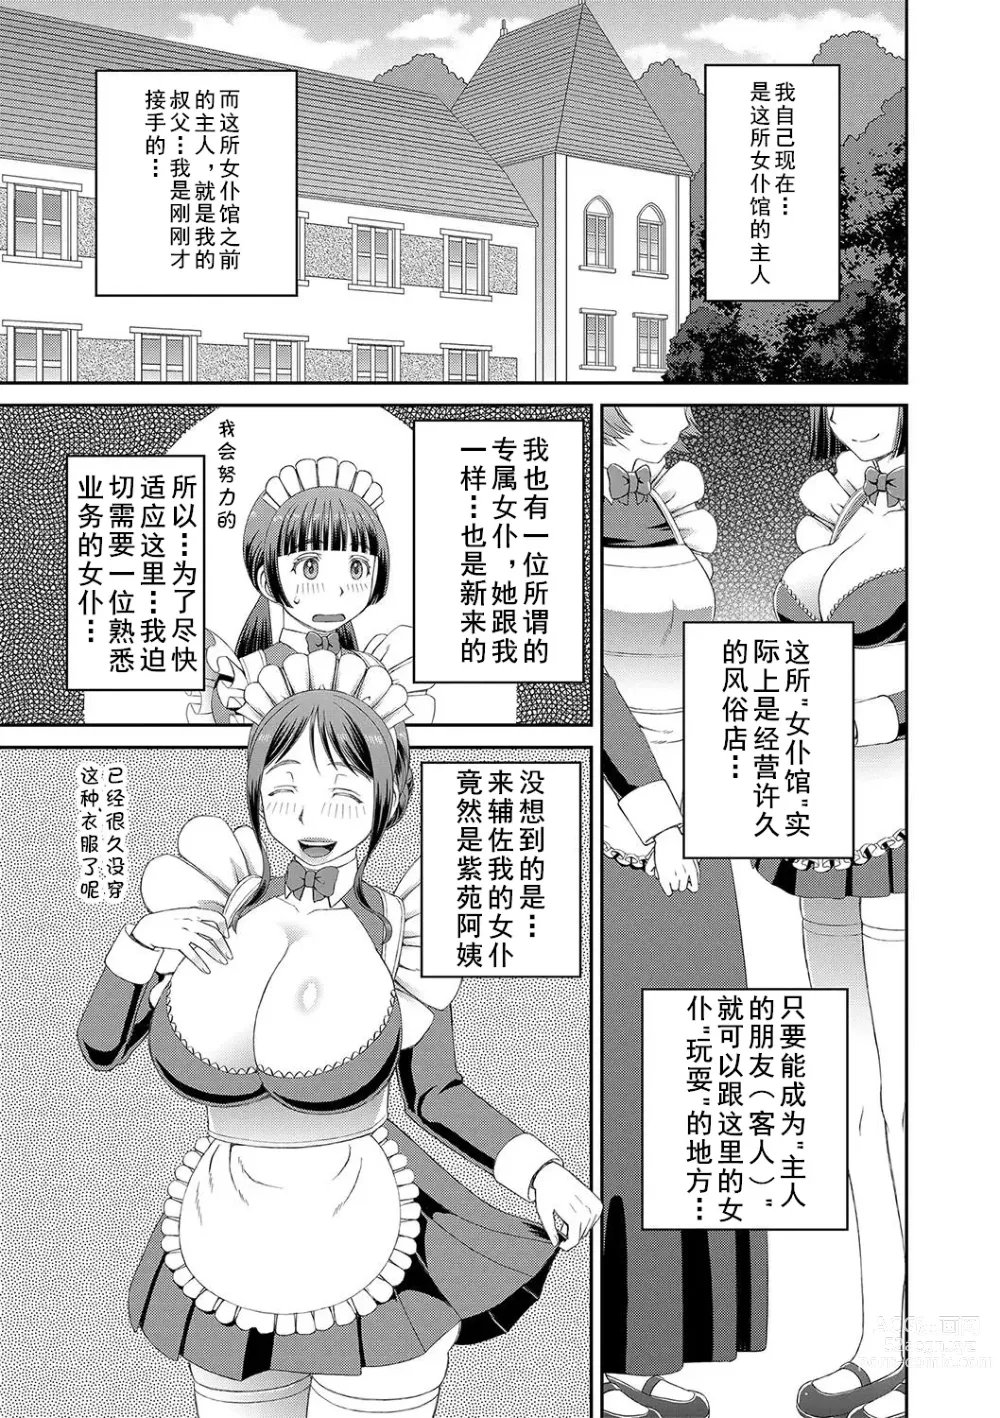 Page 3 of manga Ano Hito ni...